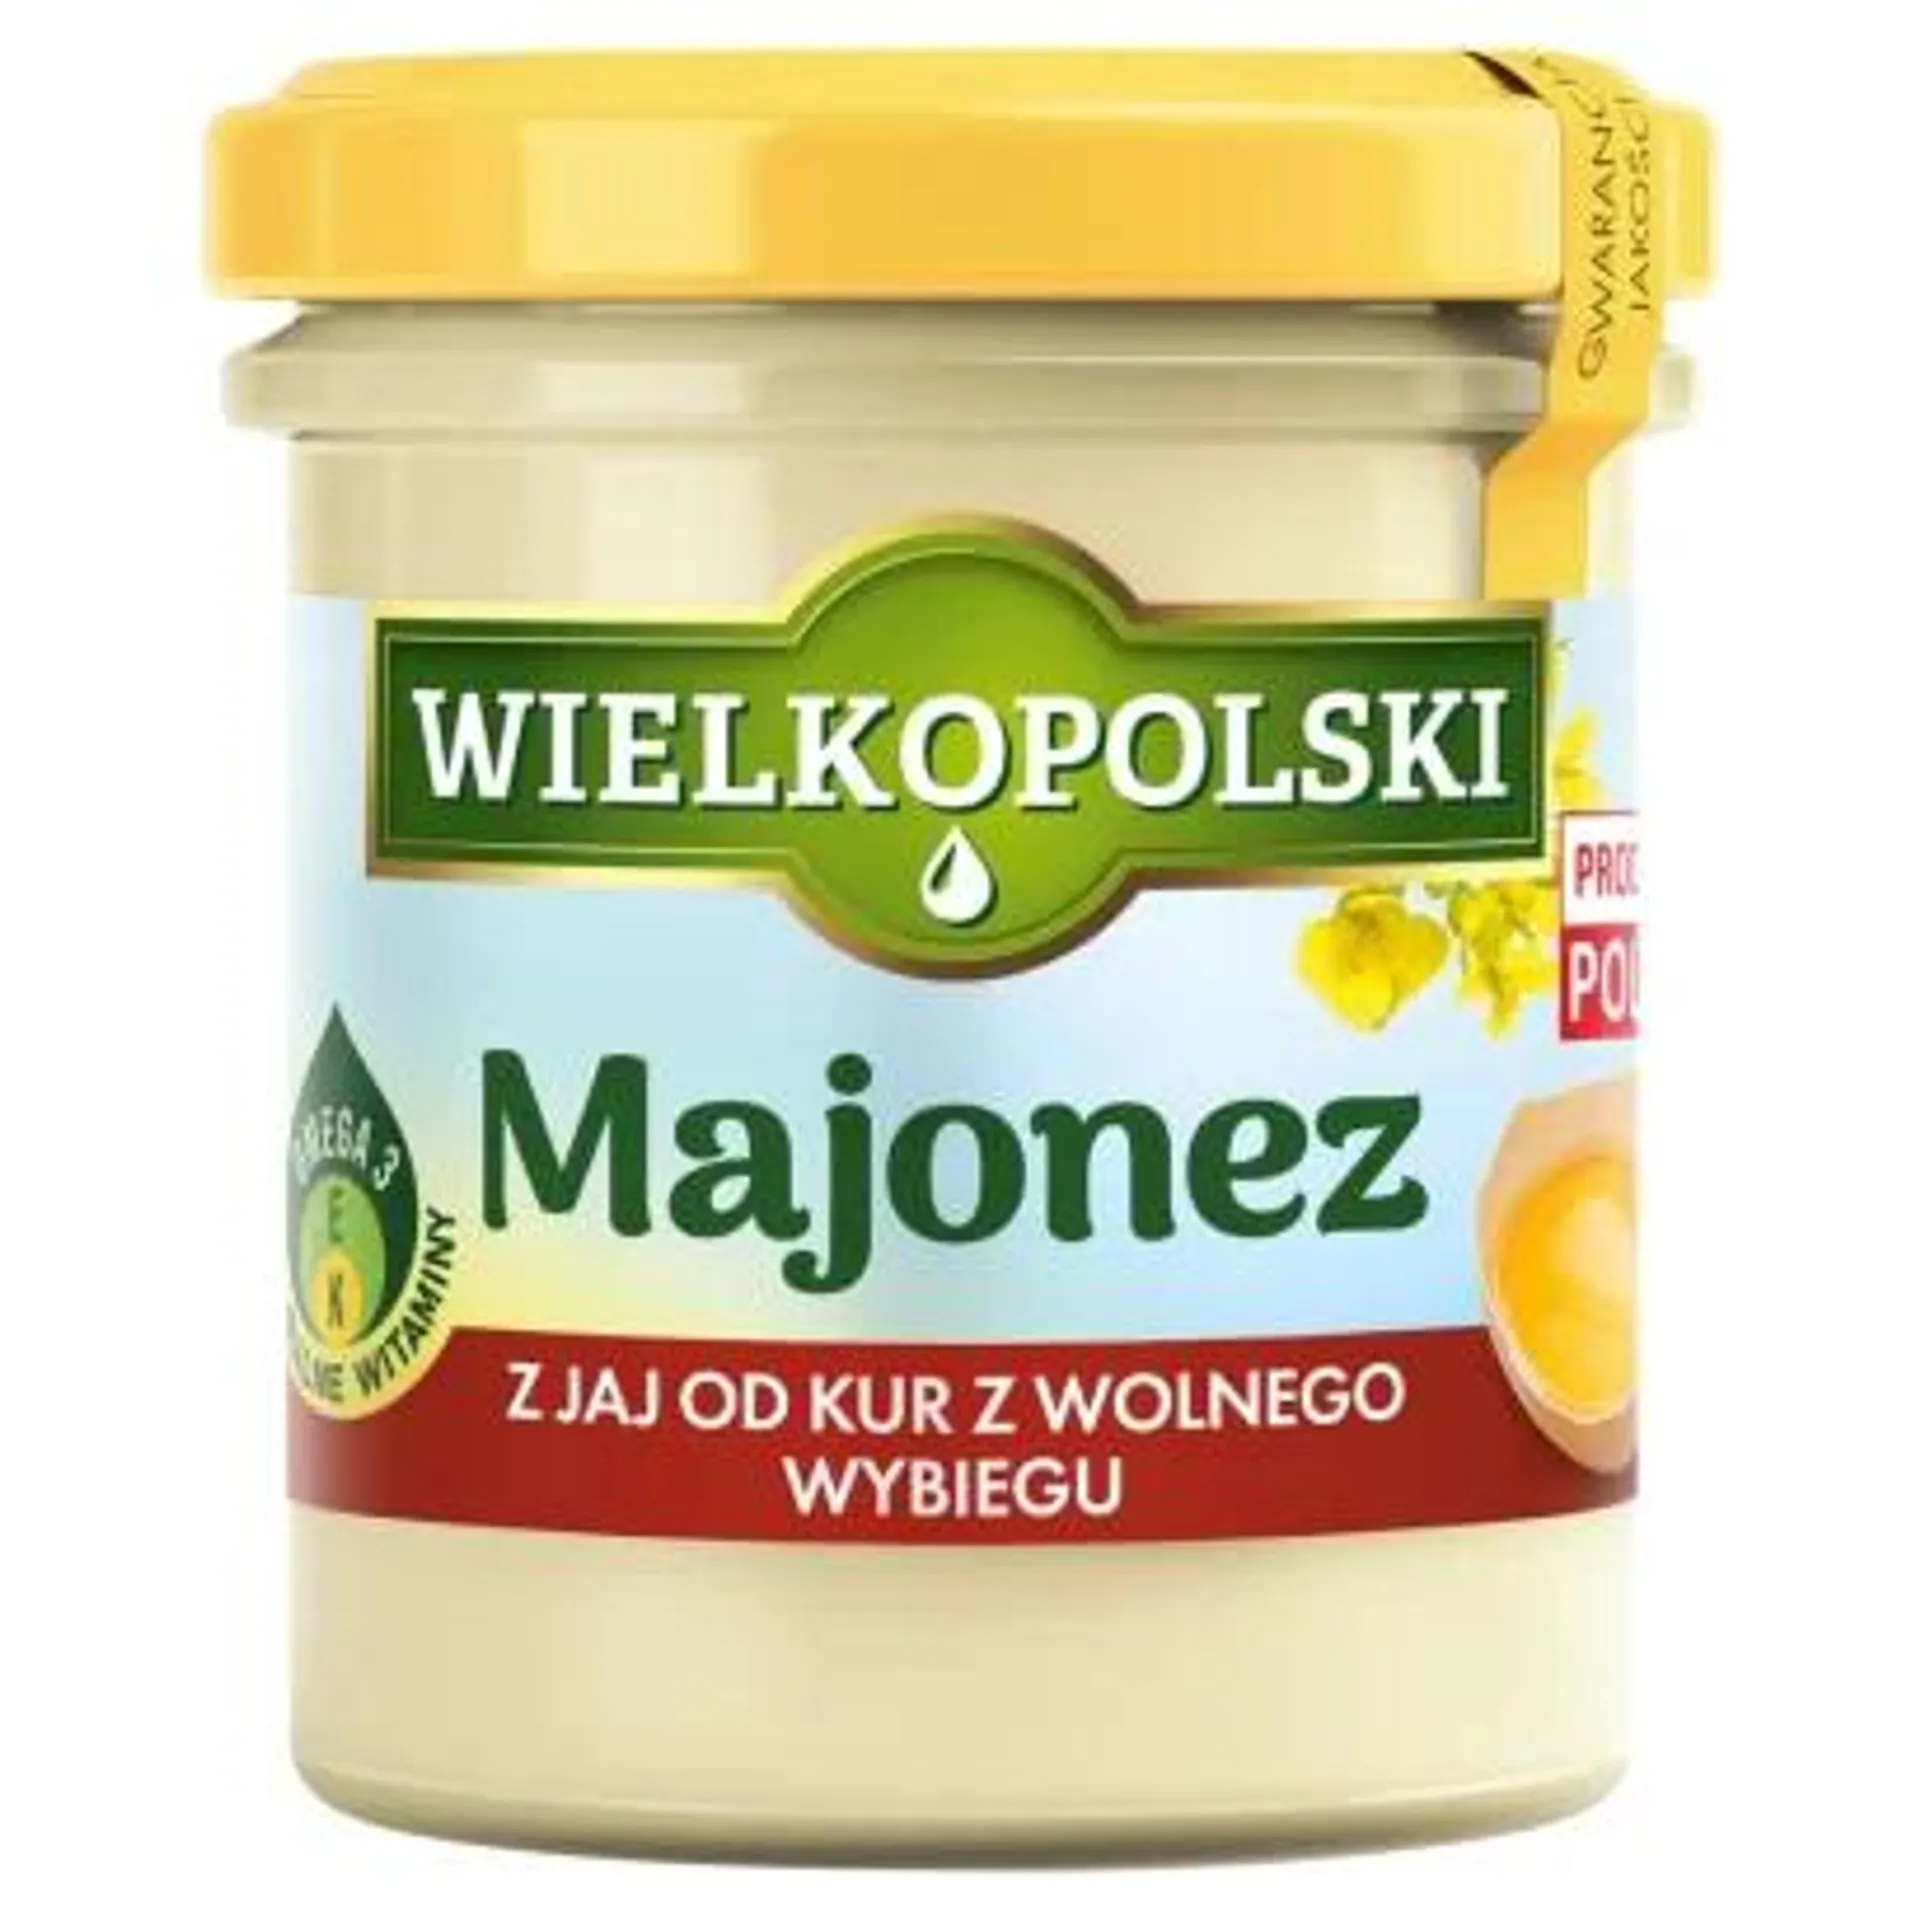 Wielkopolski - Majonez